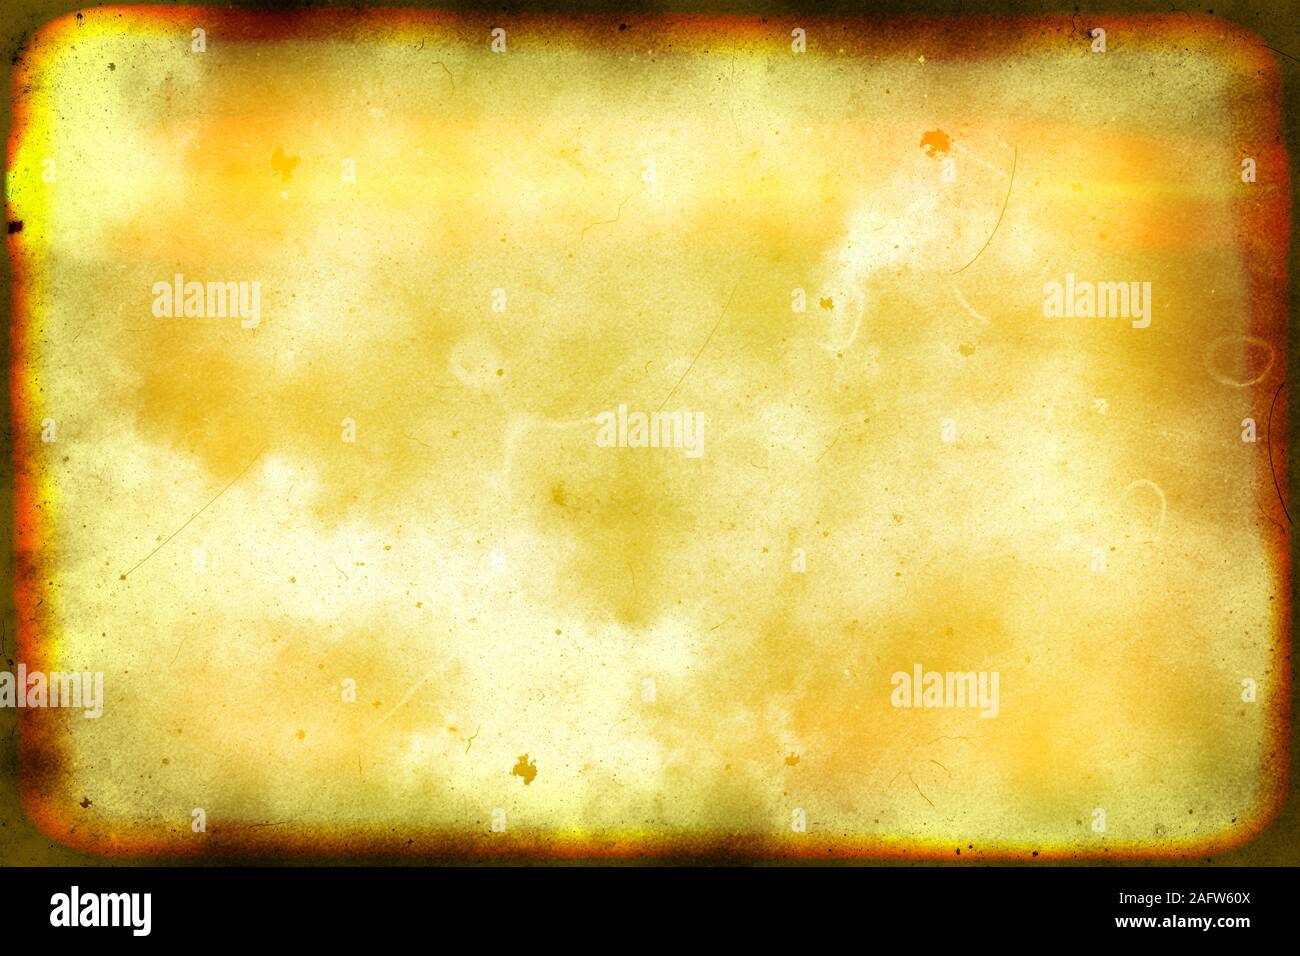 Nahaufnahme des bunten alten Film/Film leichte Undichtigkeiten Textur Hintergrund, Ansicht von oben (Hochauflösende 2D-CG rendering Illustration) Stockfoto